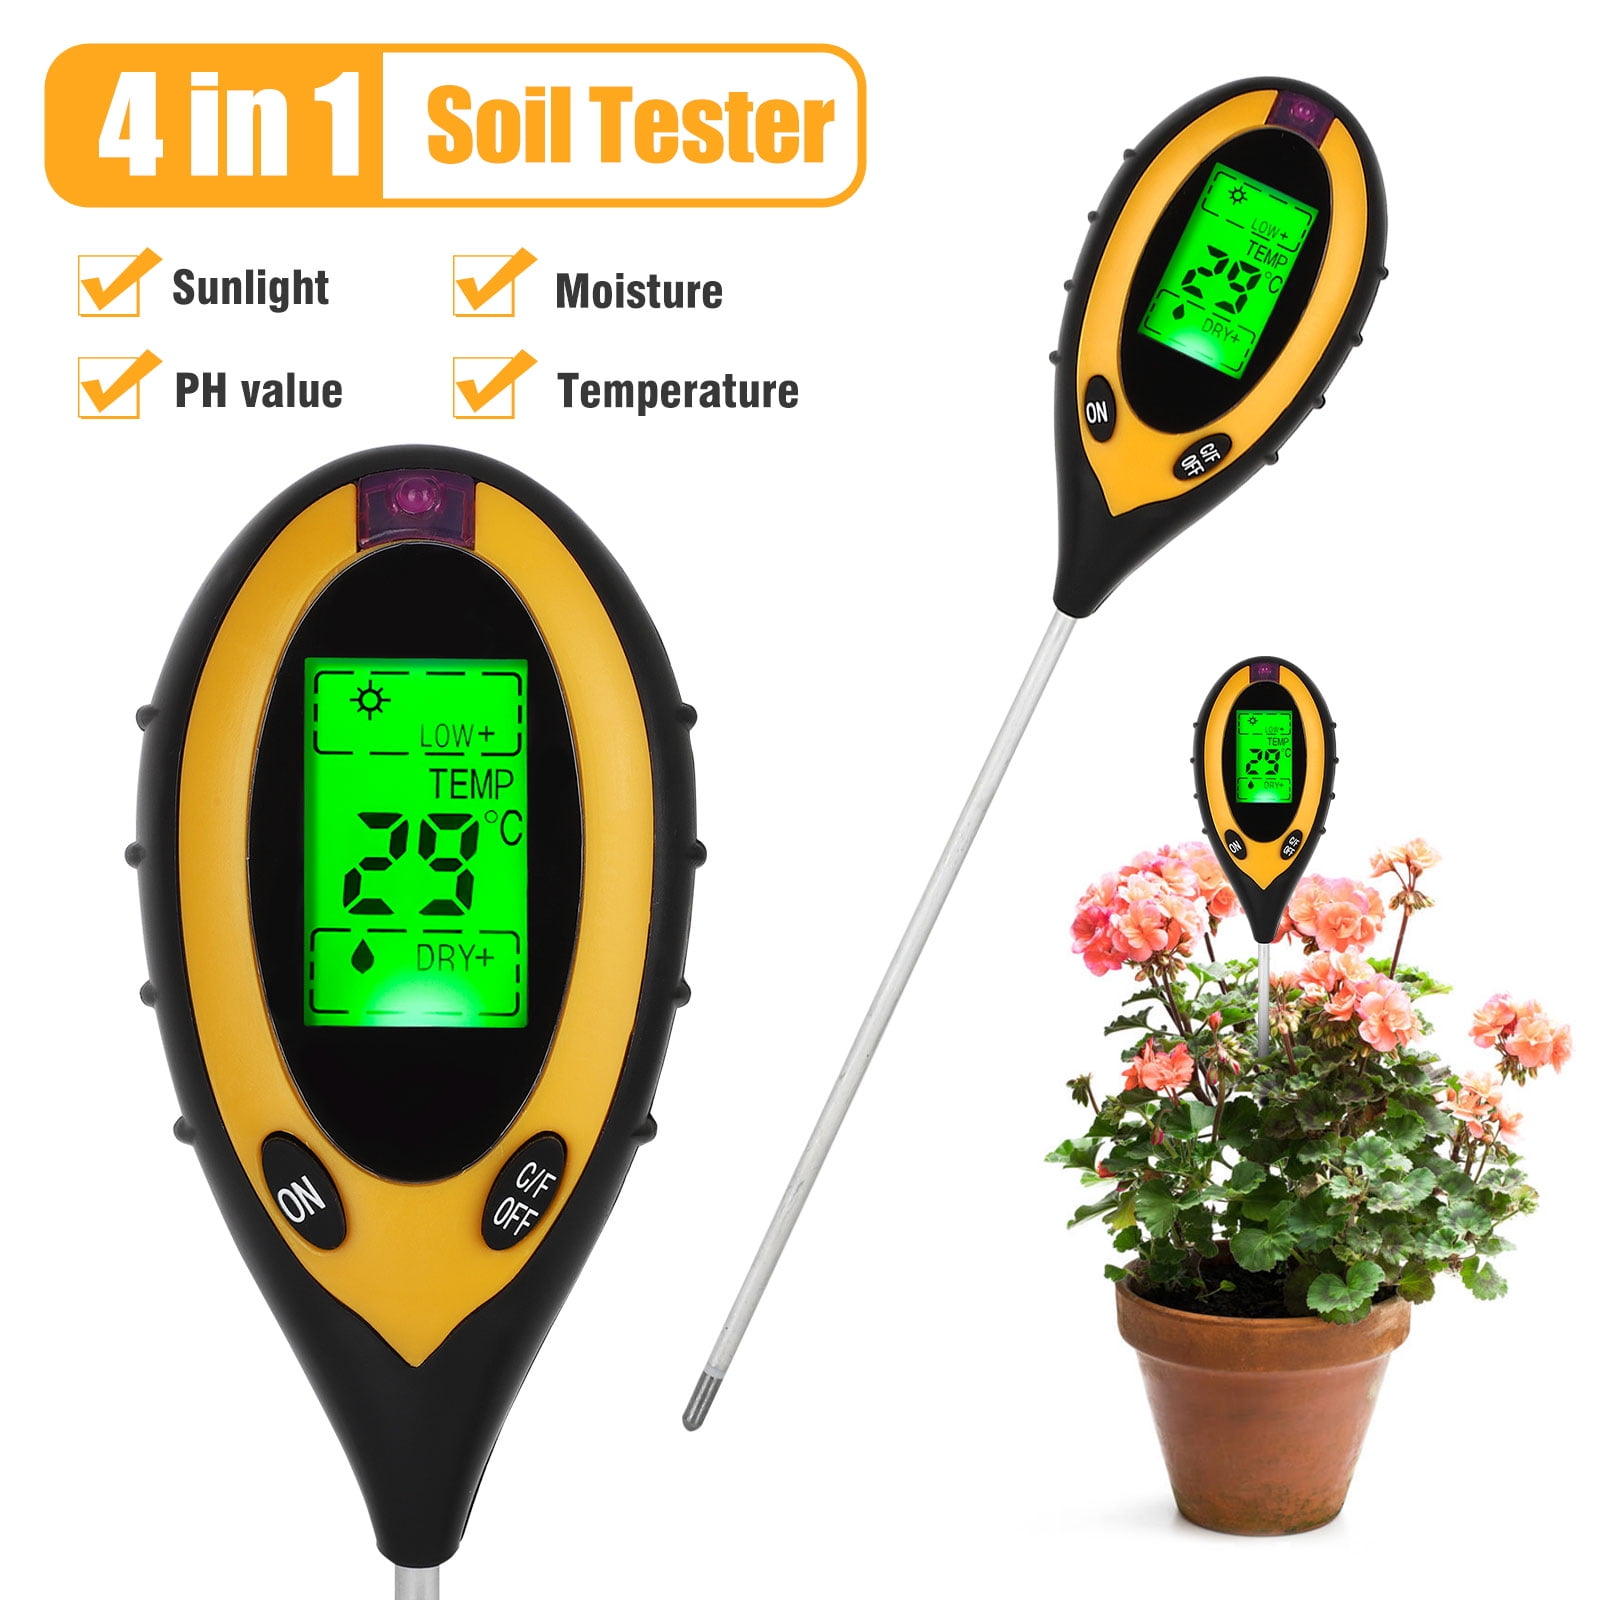 1x Garden Soil Tester Moisture Sunlight PH Value Meter For Home Plant Test Tool